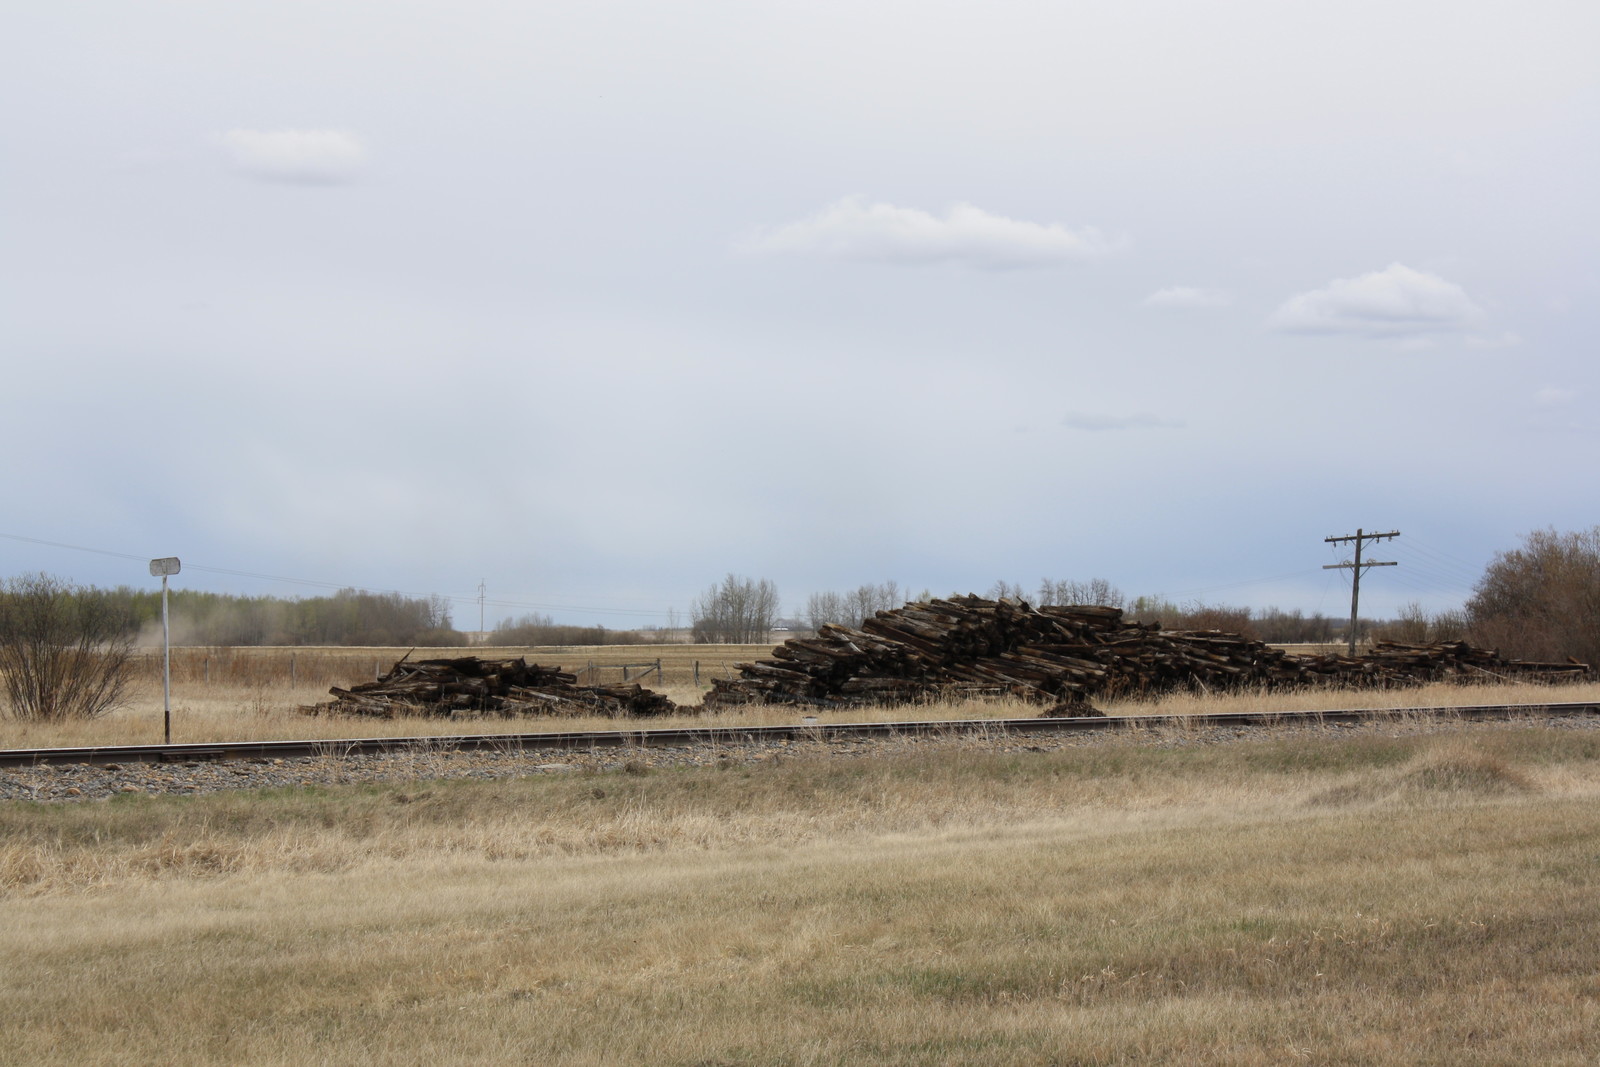 Northern Alberta prairie landscape.